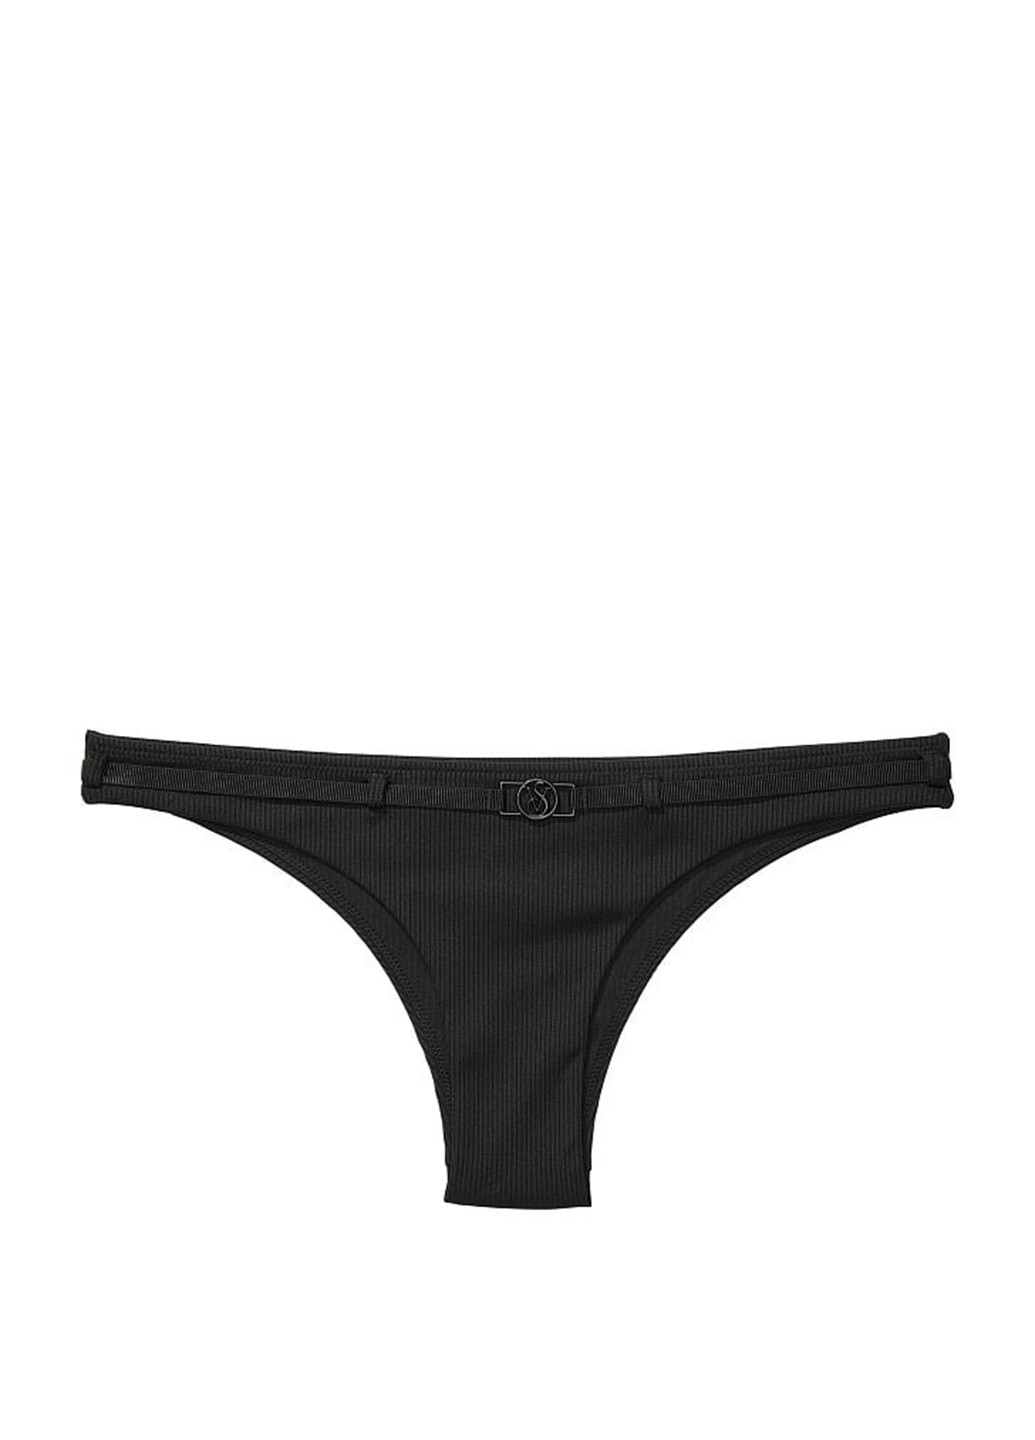 Черный летний купальник (лиф, трусы) бикини Victoria's Secret